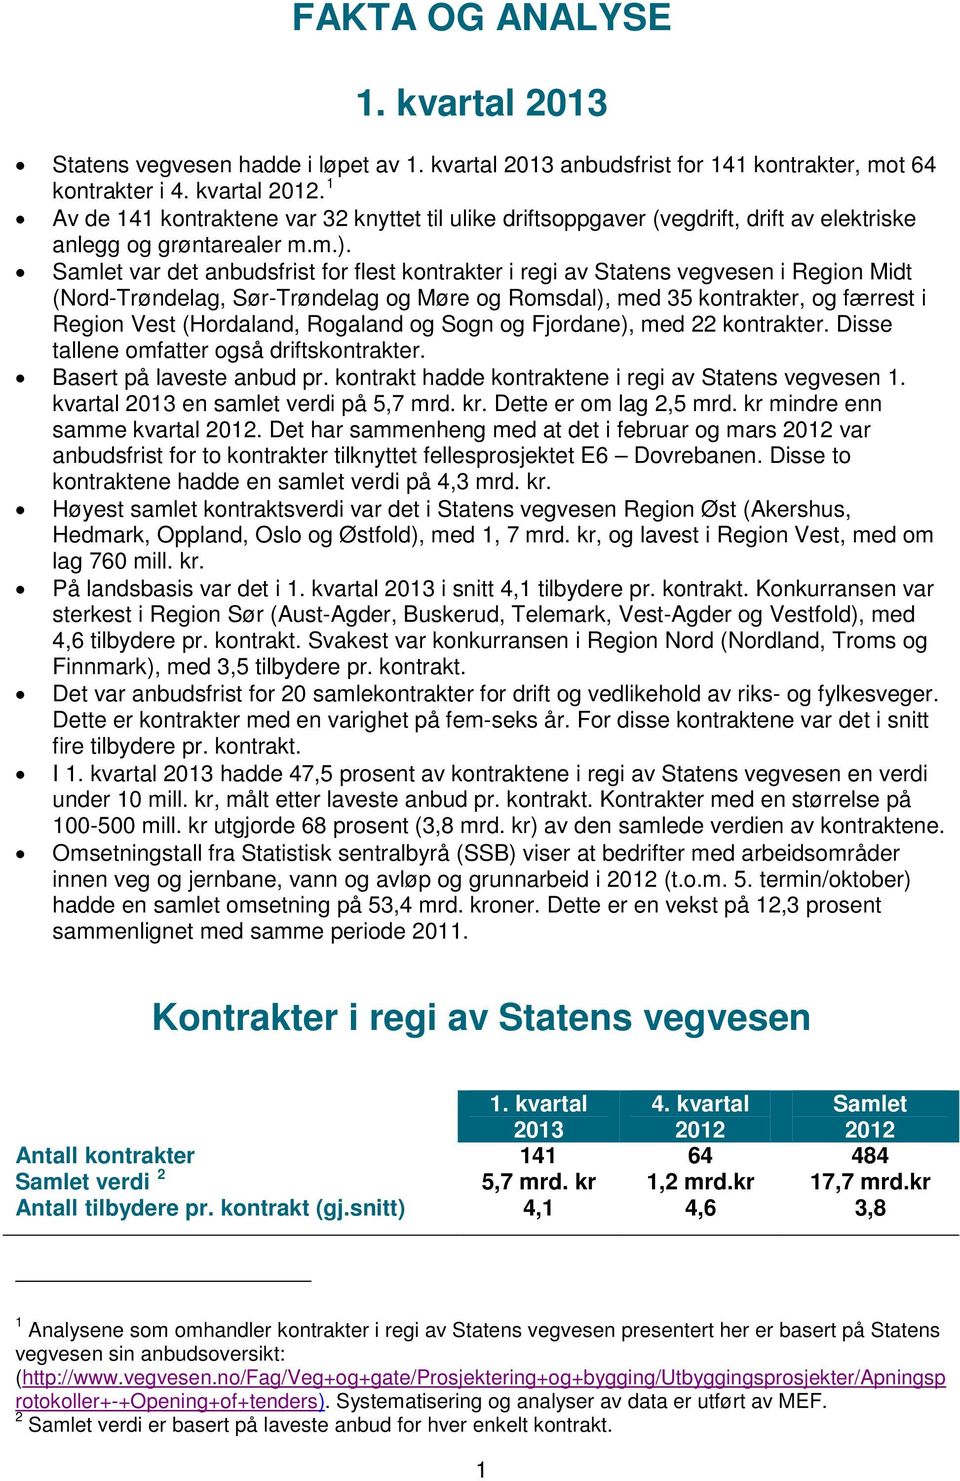 Samlet var det anbudsfrist for flest kontrakter i regi av Statens vegvesen i Midt (Nord-Trøndelag, Sør-Trøndelag og Møre og Romsdal), med 35 kontrakter, og færrest i Vest (Hordaland, Rogaland og Sogn